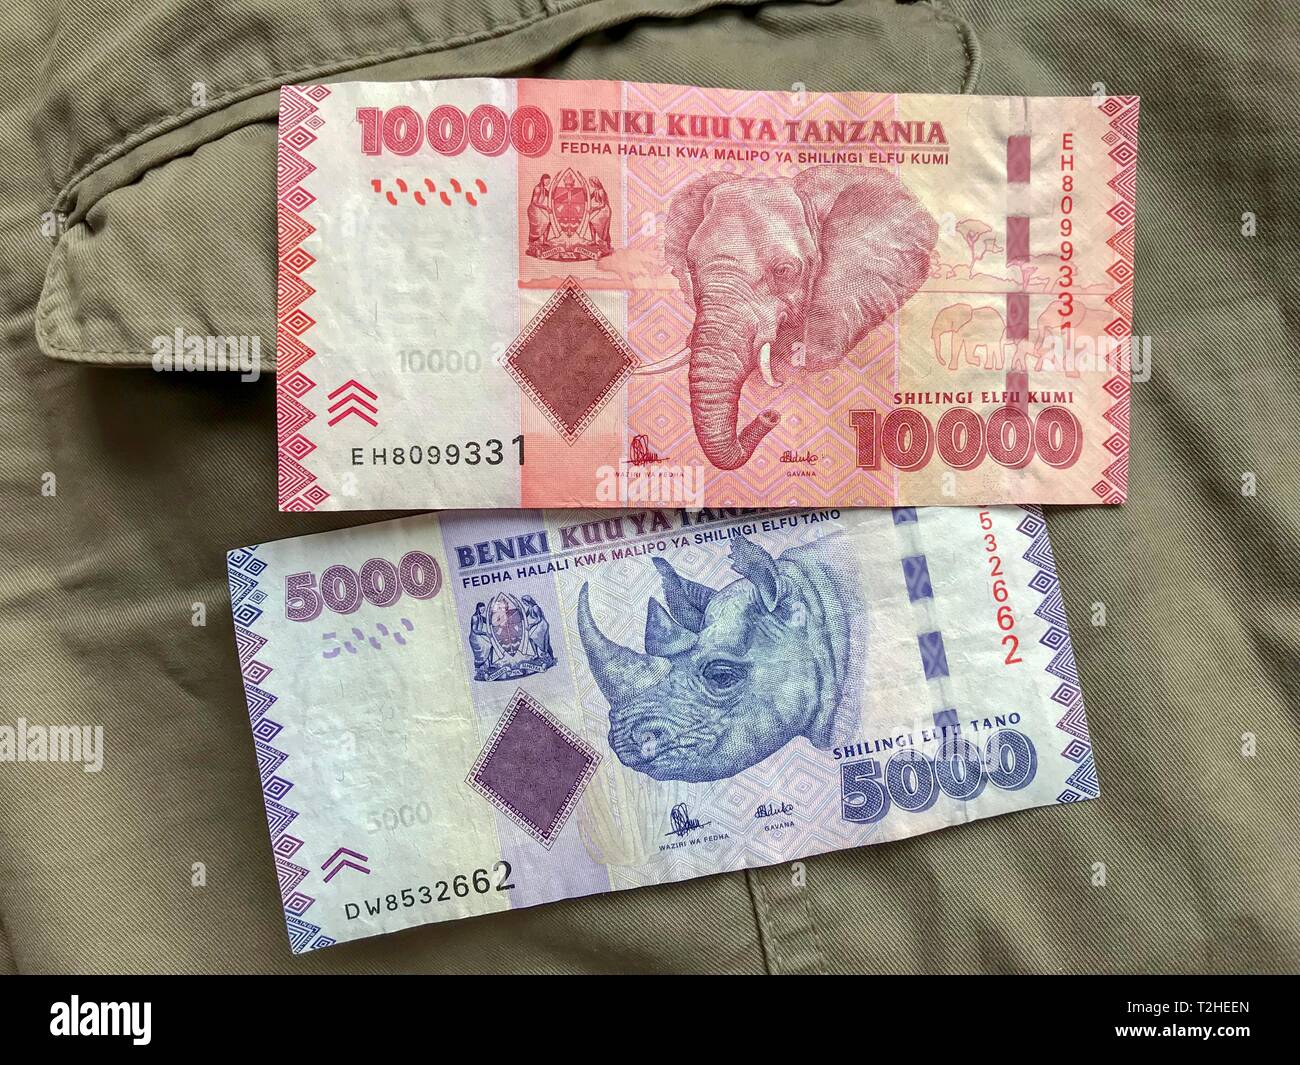 La valuta della Tanzania, di banconote con raffigurata elefante e rinoceronte su safari vestiti, immagine simbolica di frodo, Tanzania Foto Stock